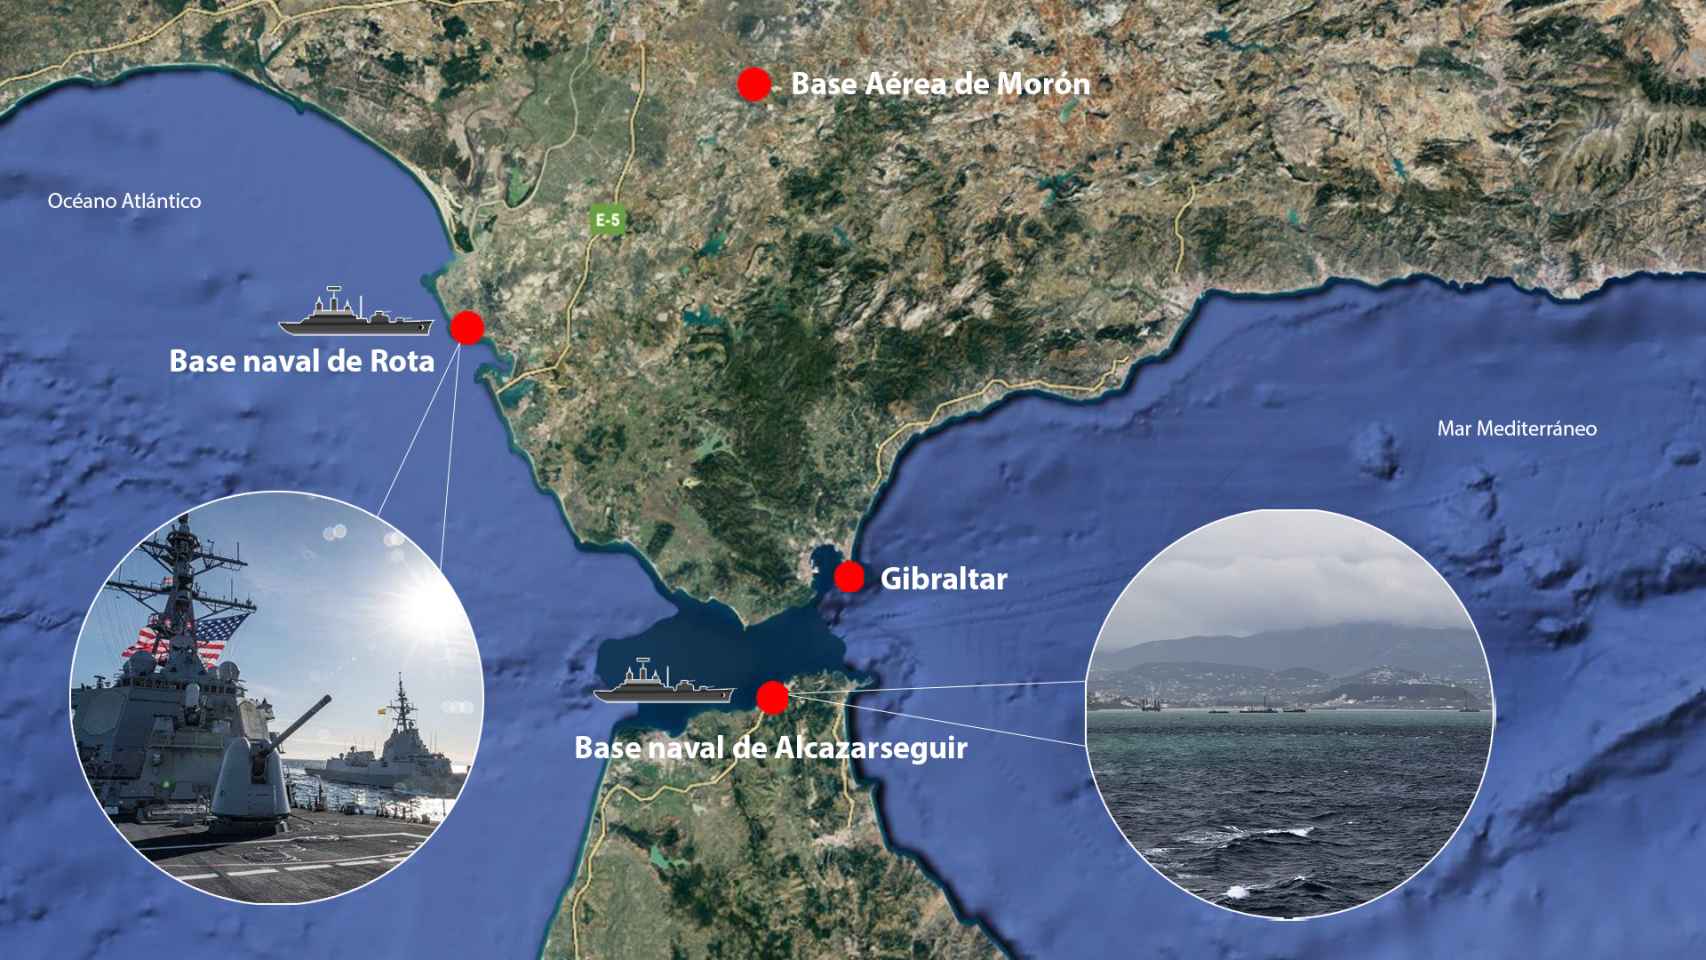 El mapa de las bases navales de Rota y de Alcazarseguir.